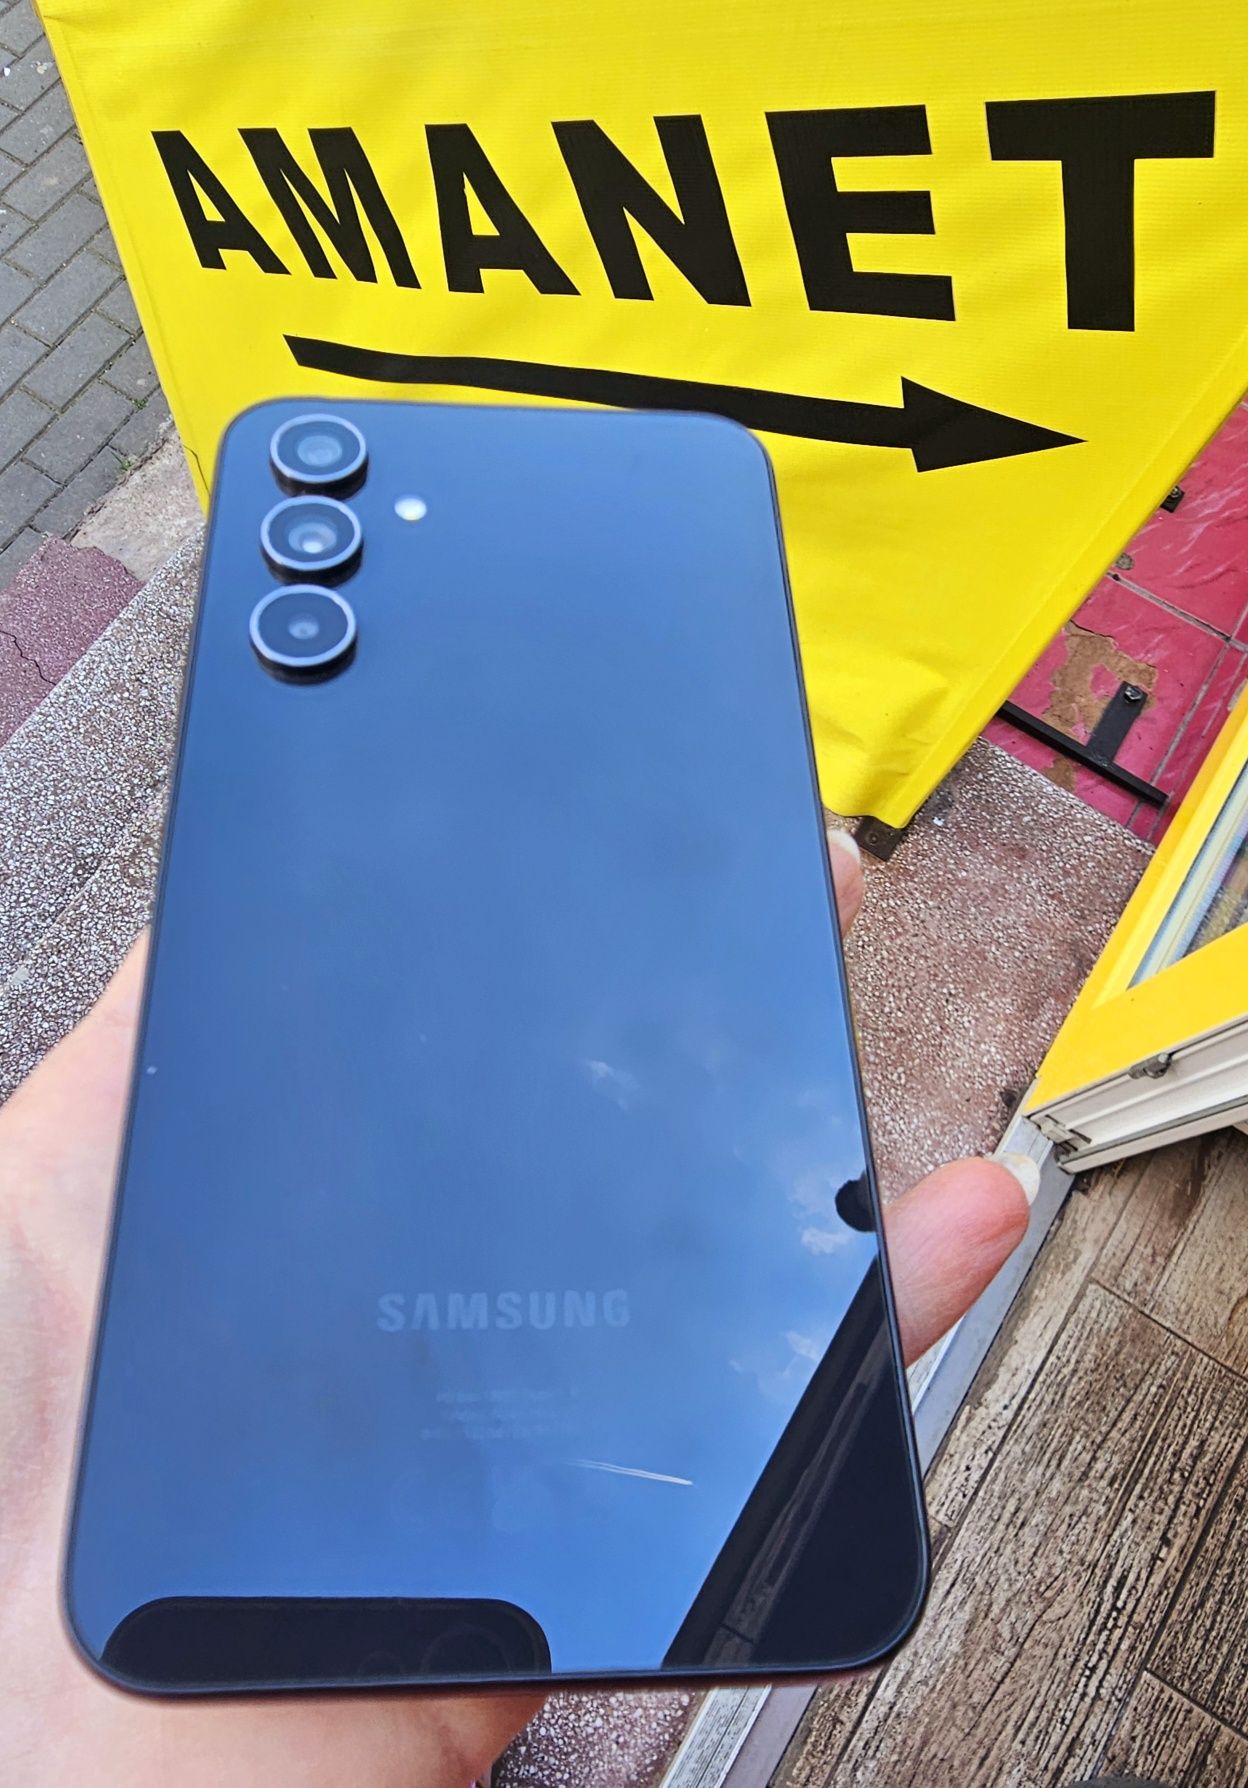 Telefon Samsung Galaxy A54 5G  - 128GB  - 8GB RAM  - android  !